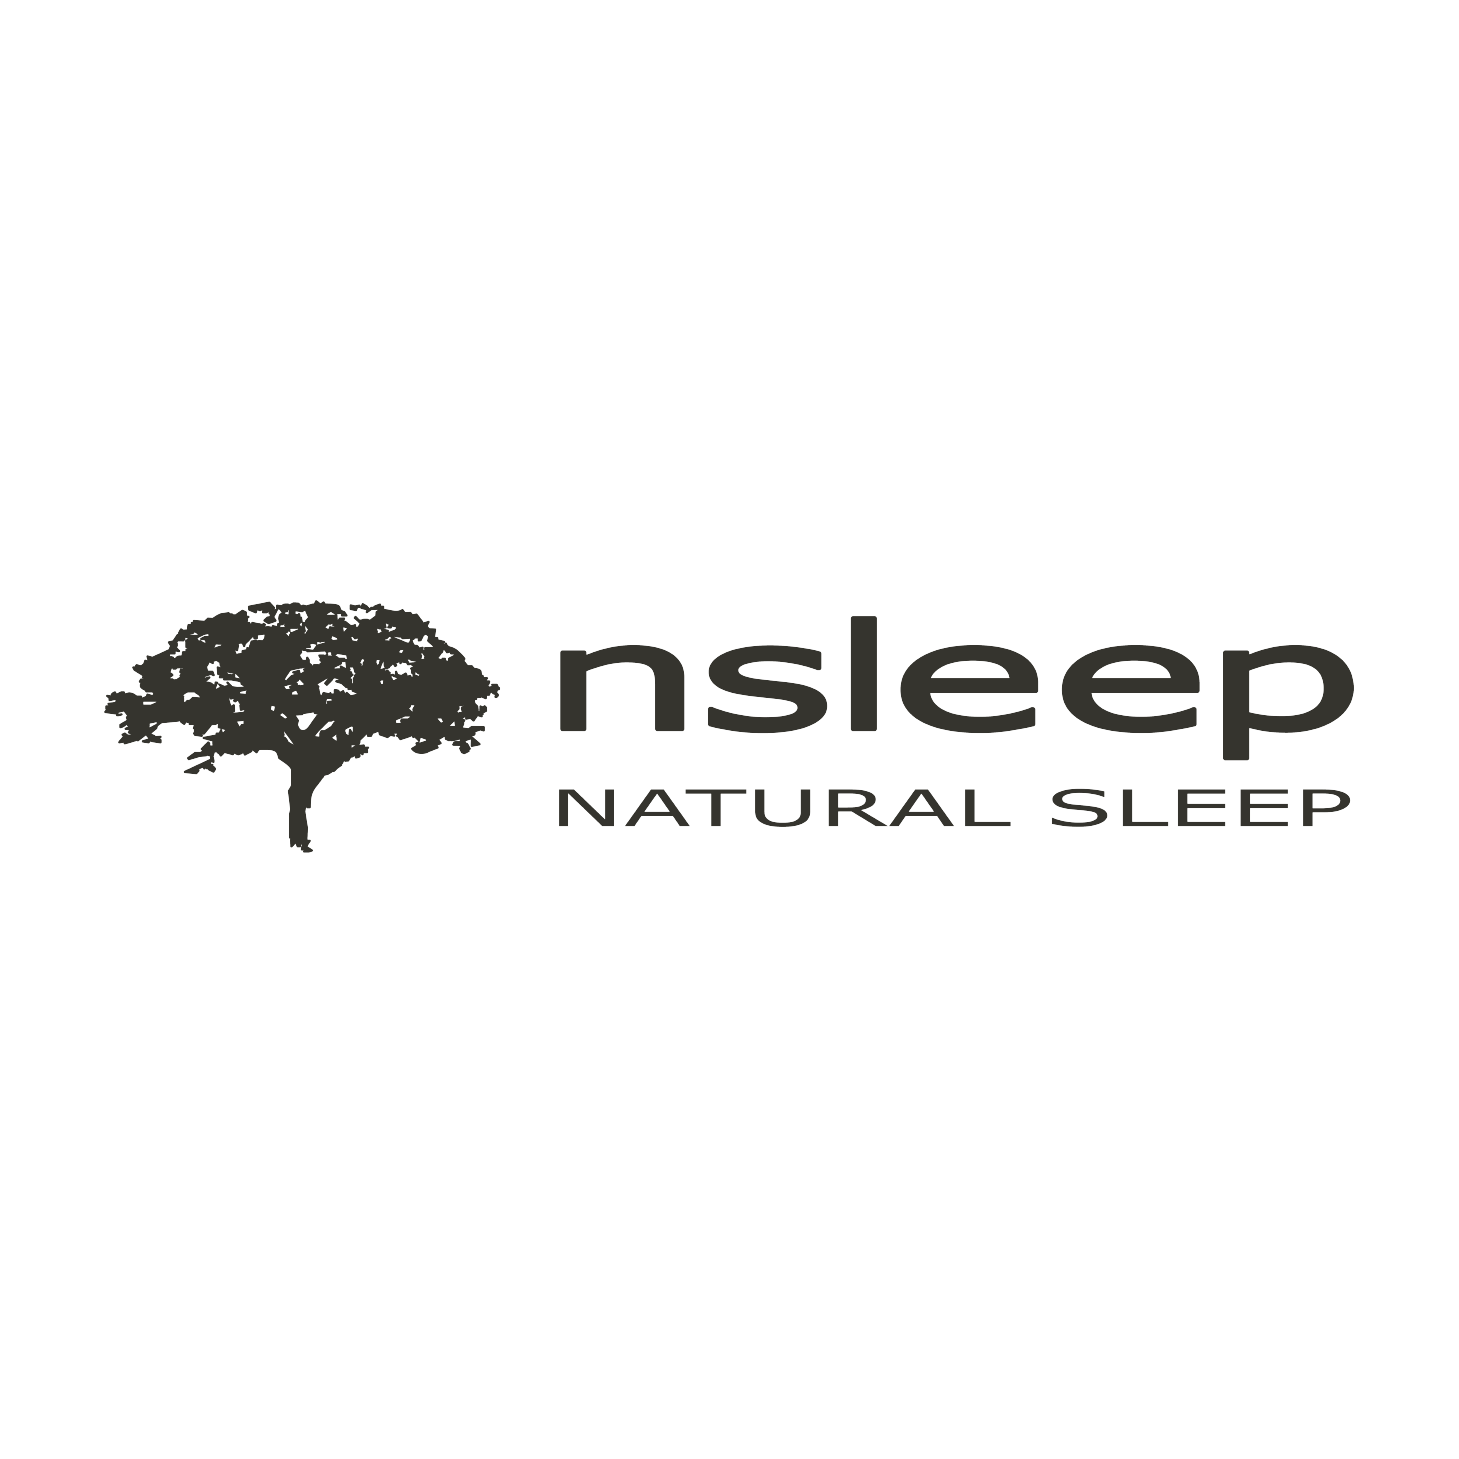 nsleep logo